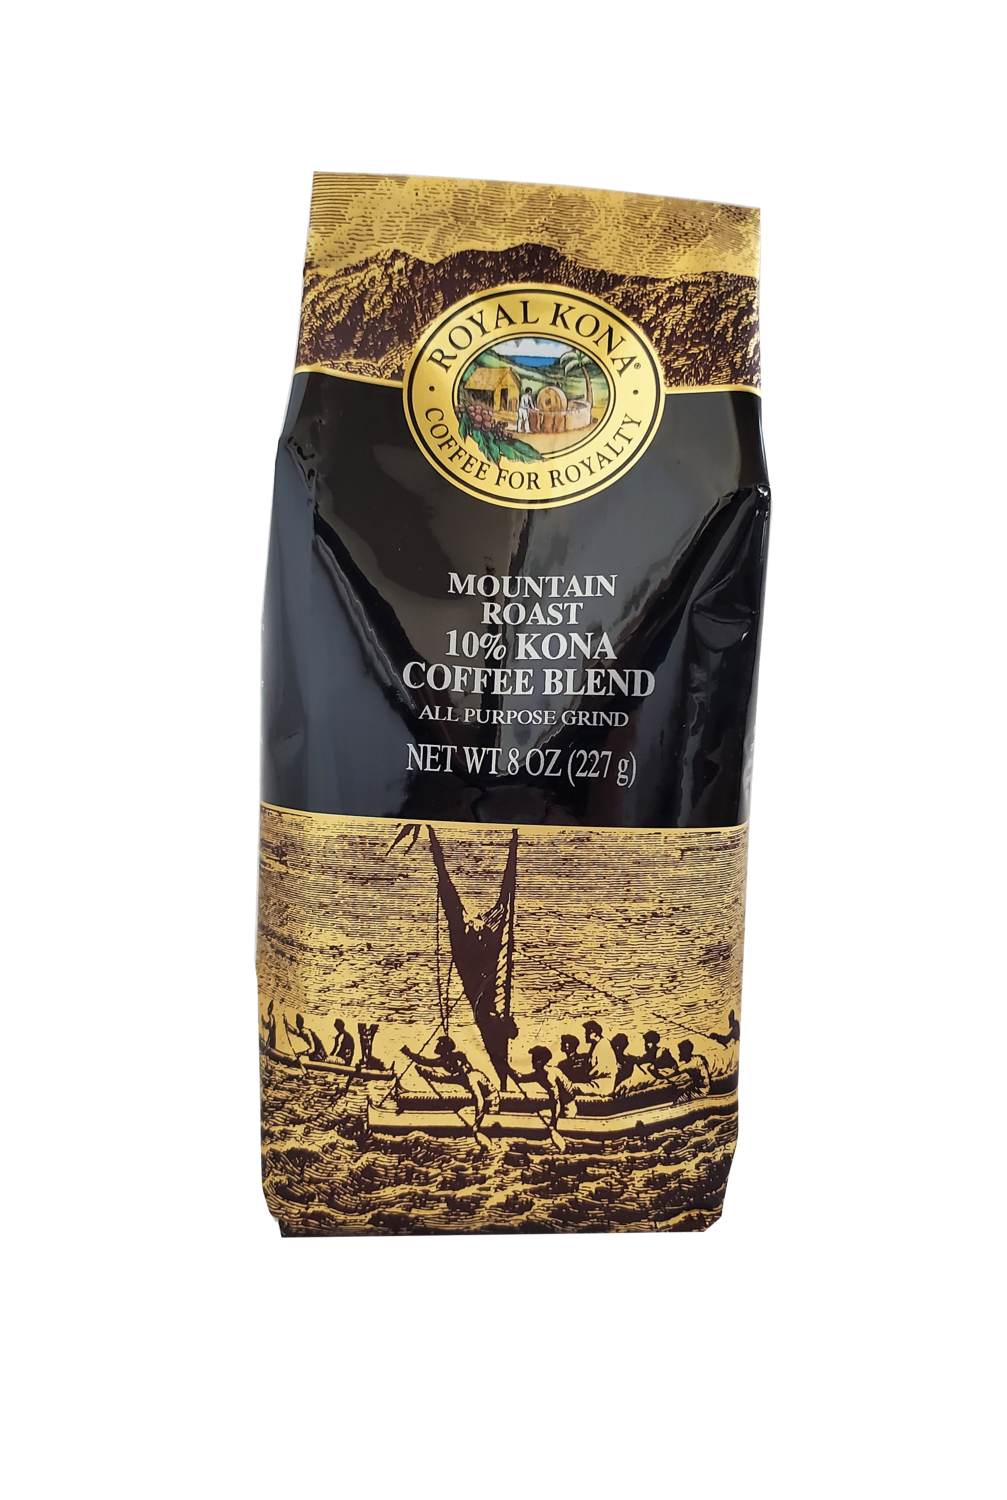 Royal Kona Coffee - Mountain Roast 10% Kona Coffee Blend 8 oz